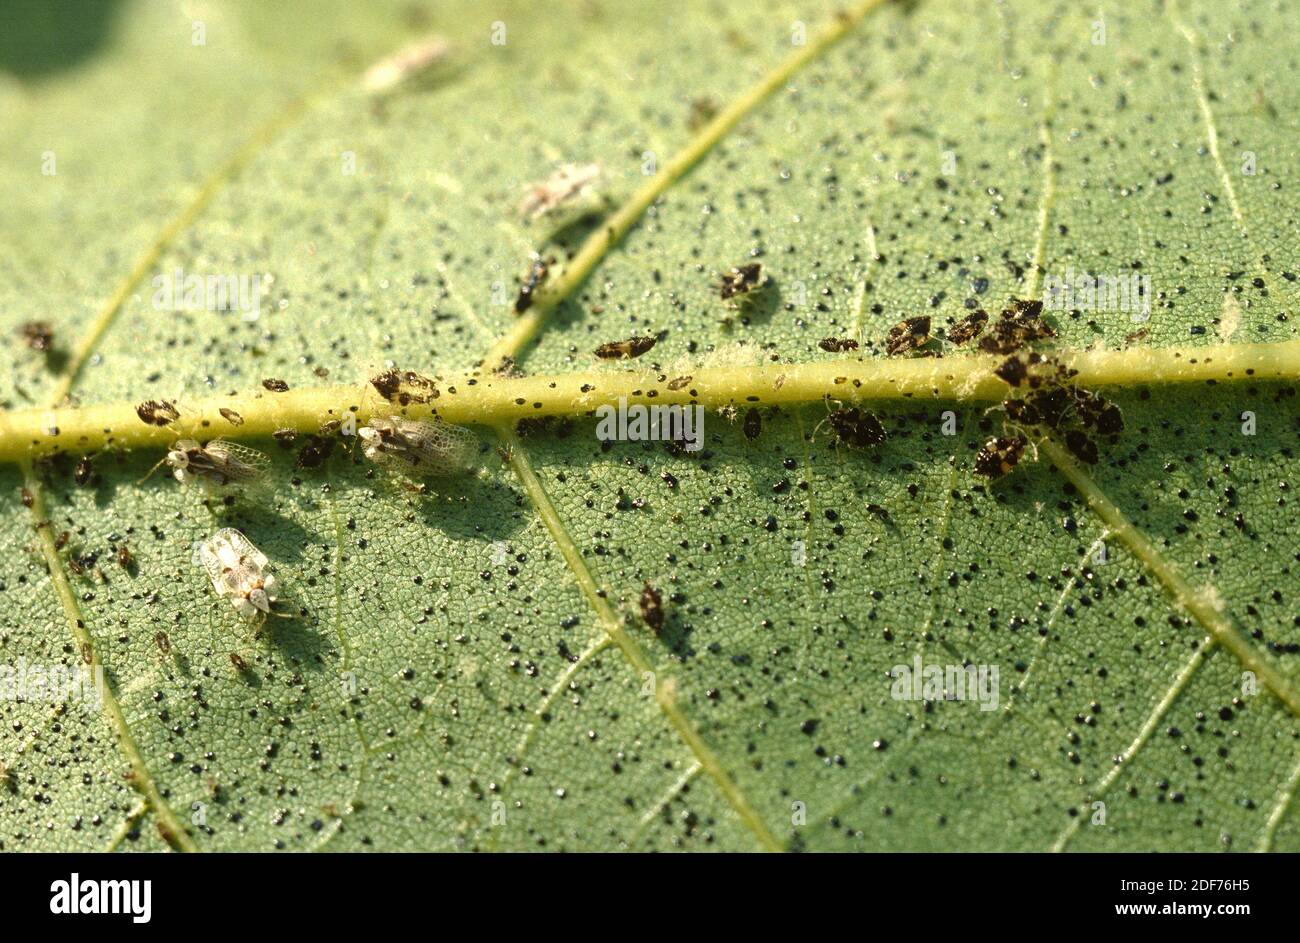 El insecto de encaje de Sycamore (Corythucha ciliata) es un insecto de hemiptera que se alimenta de la savia. Adultos y larvas. Foto de stock